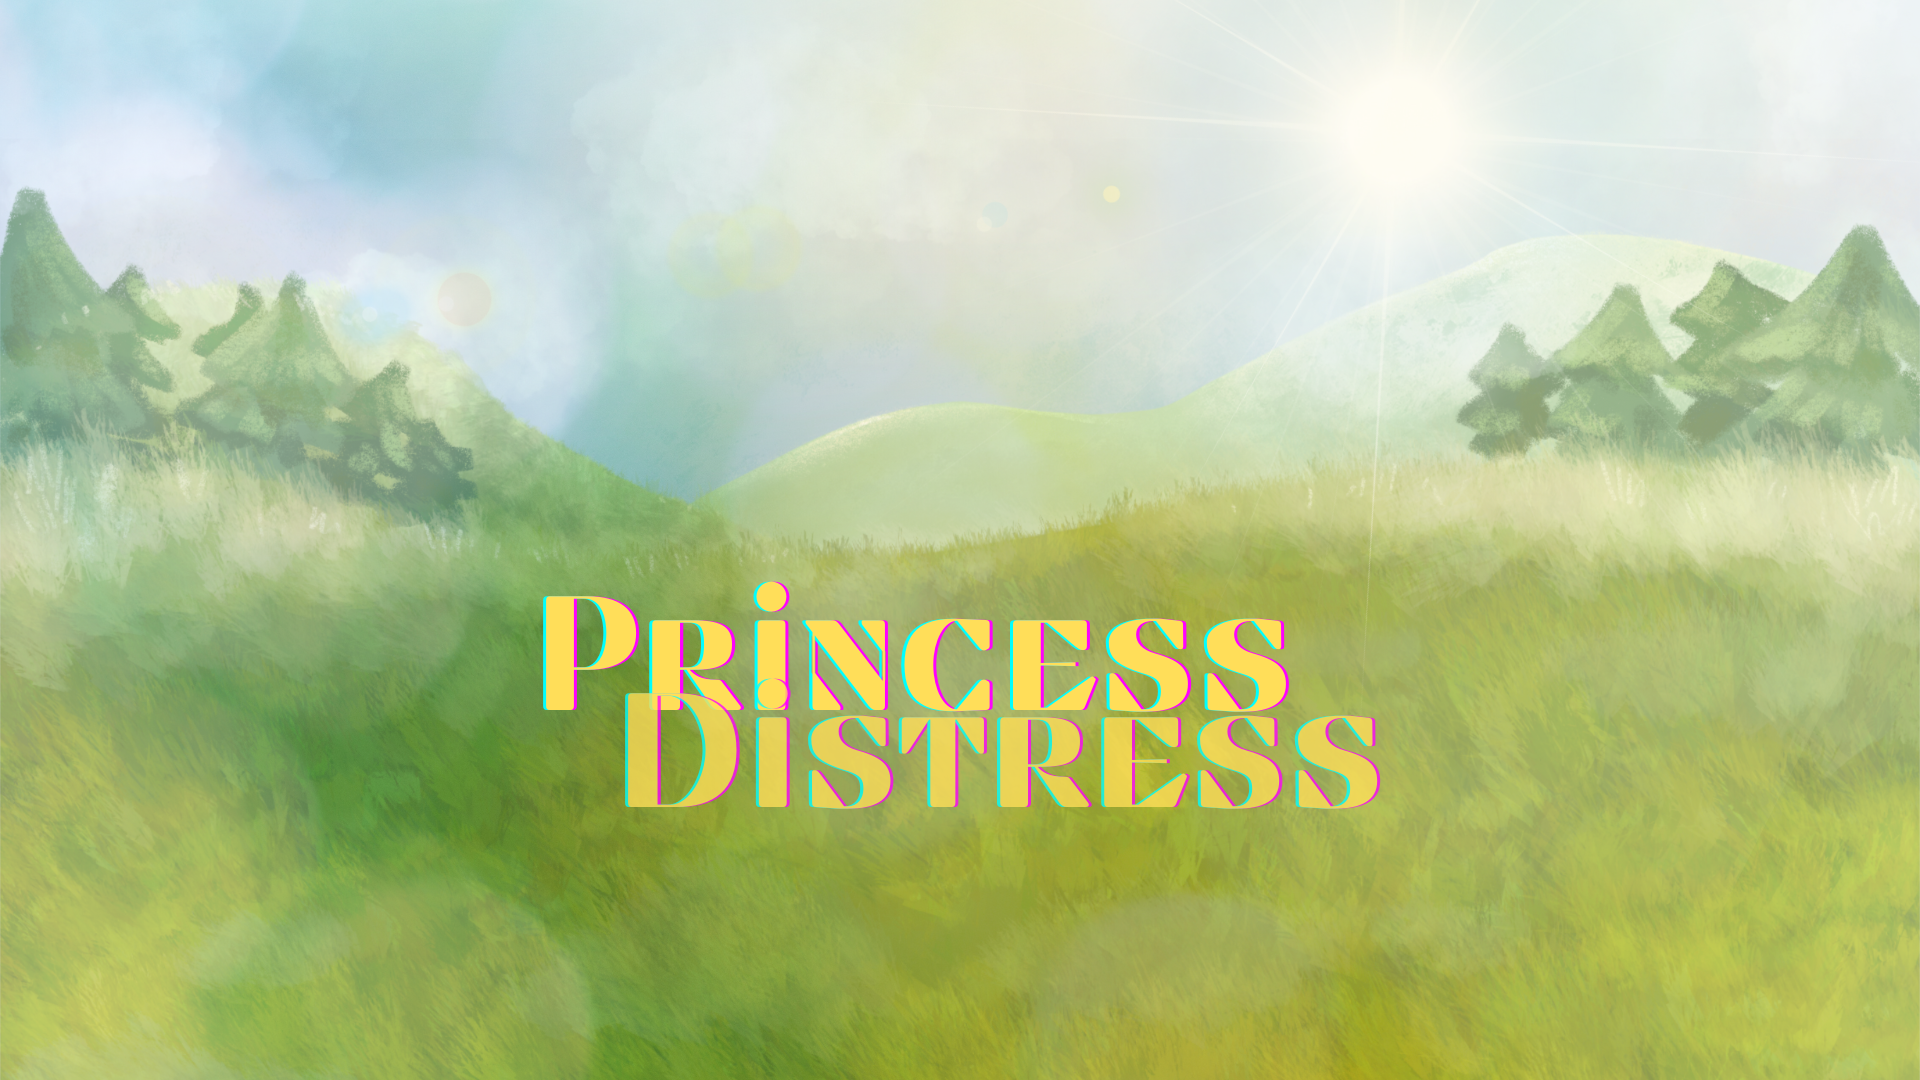 Princess Distress